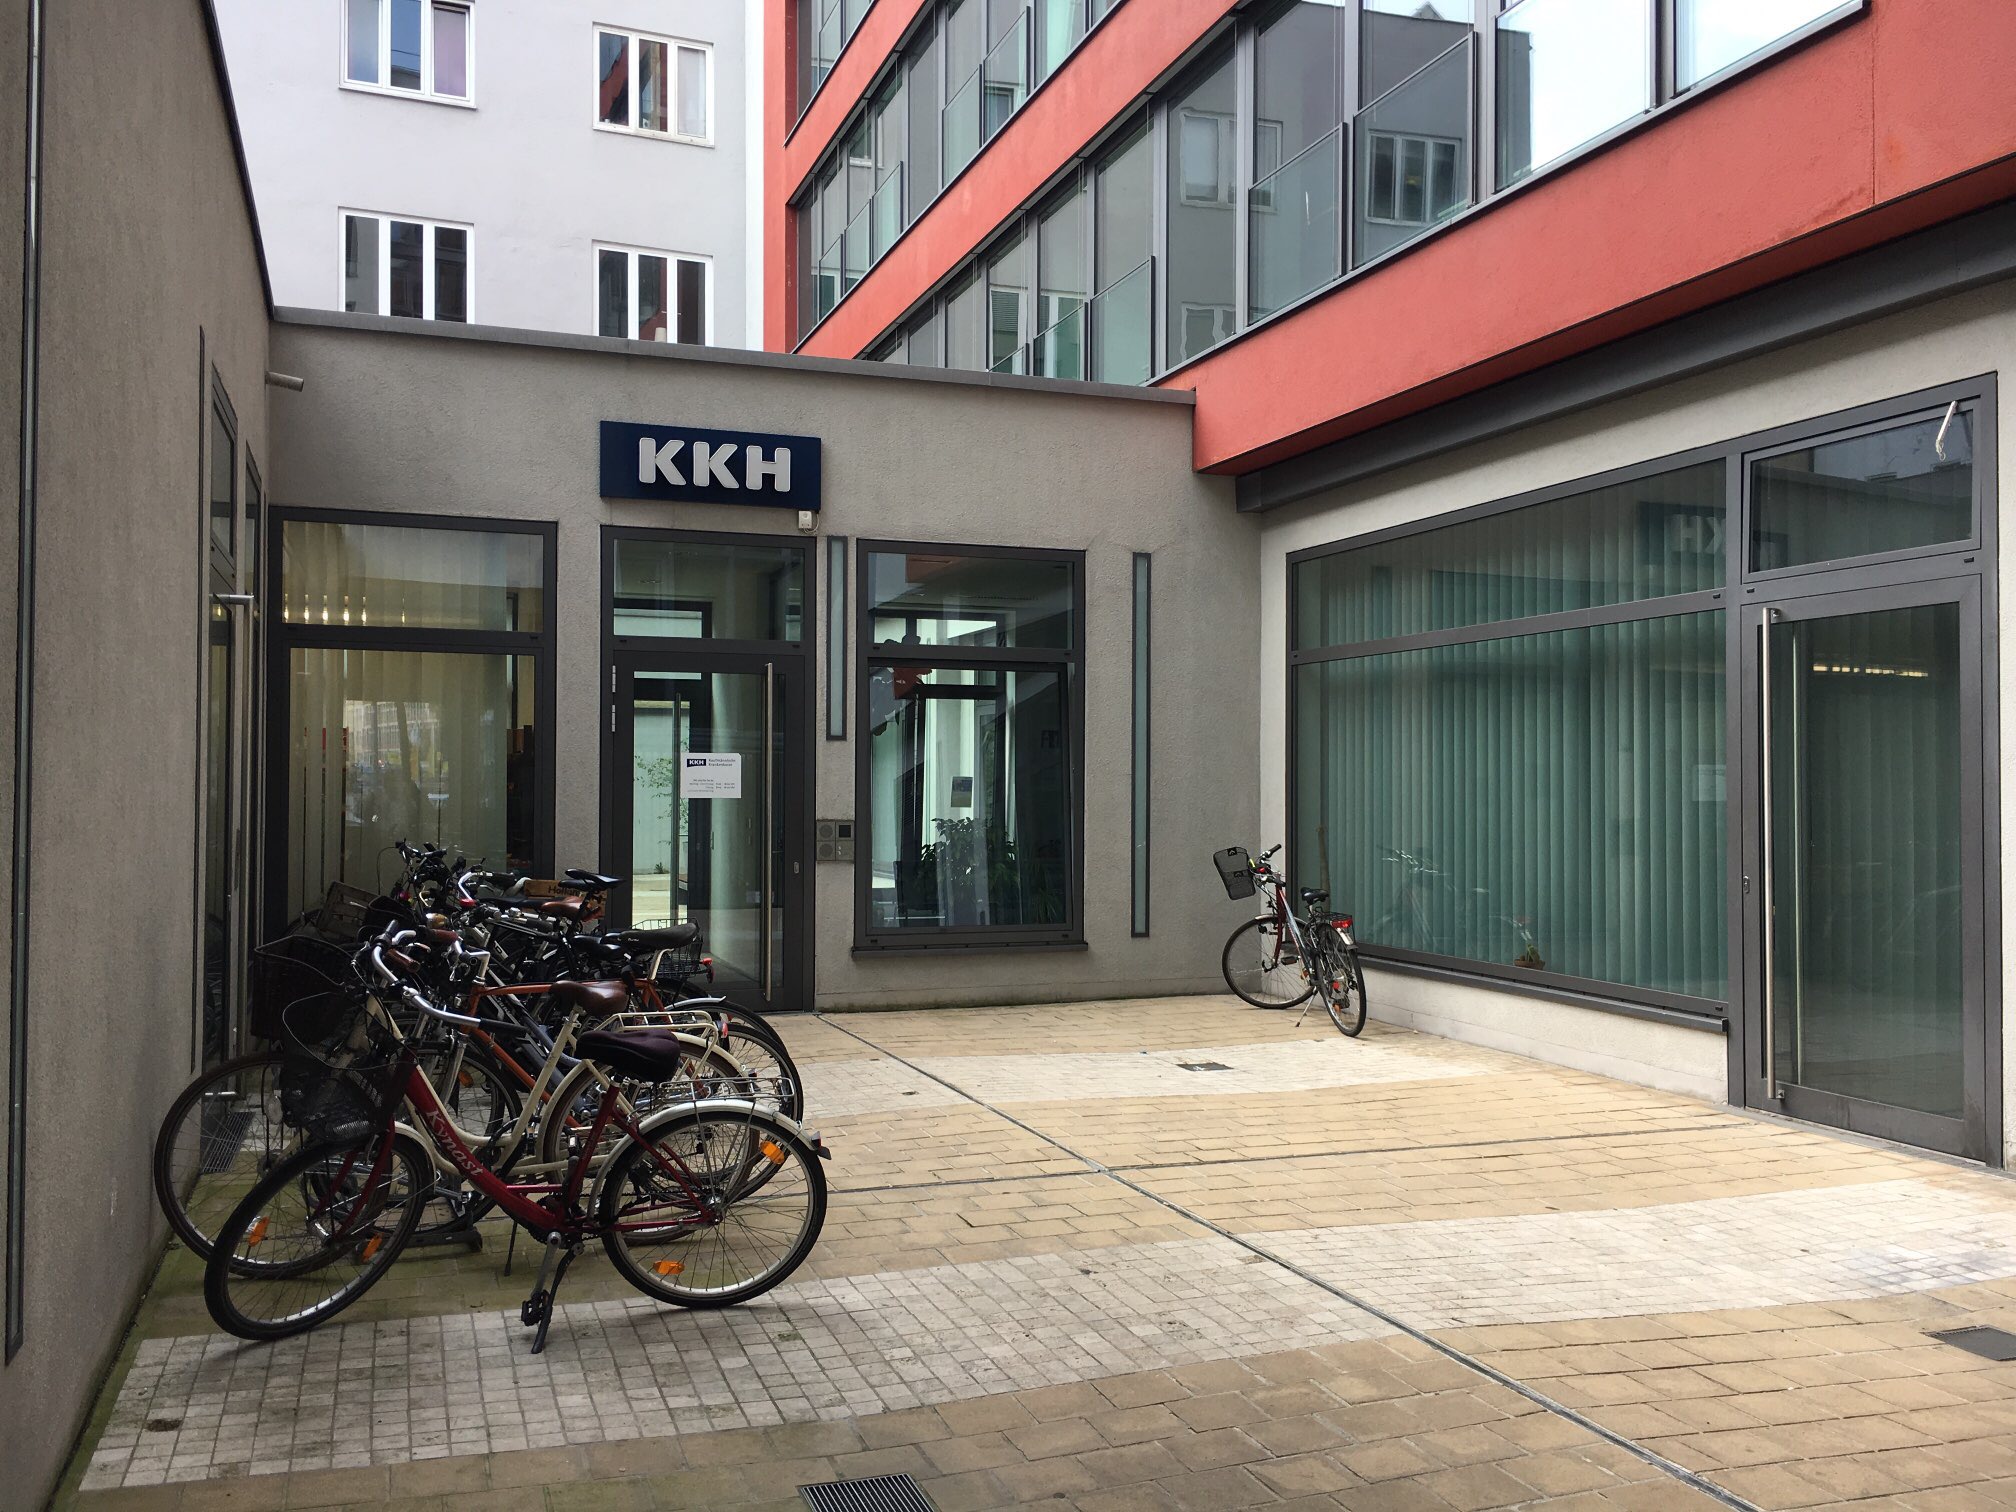 Bild 1 KKH Kaufmännische Krankenkasse Servicestelle München in München